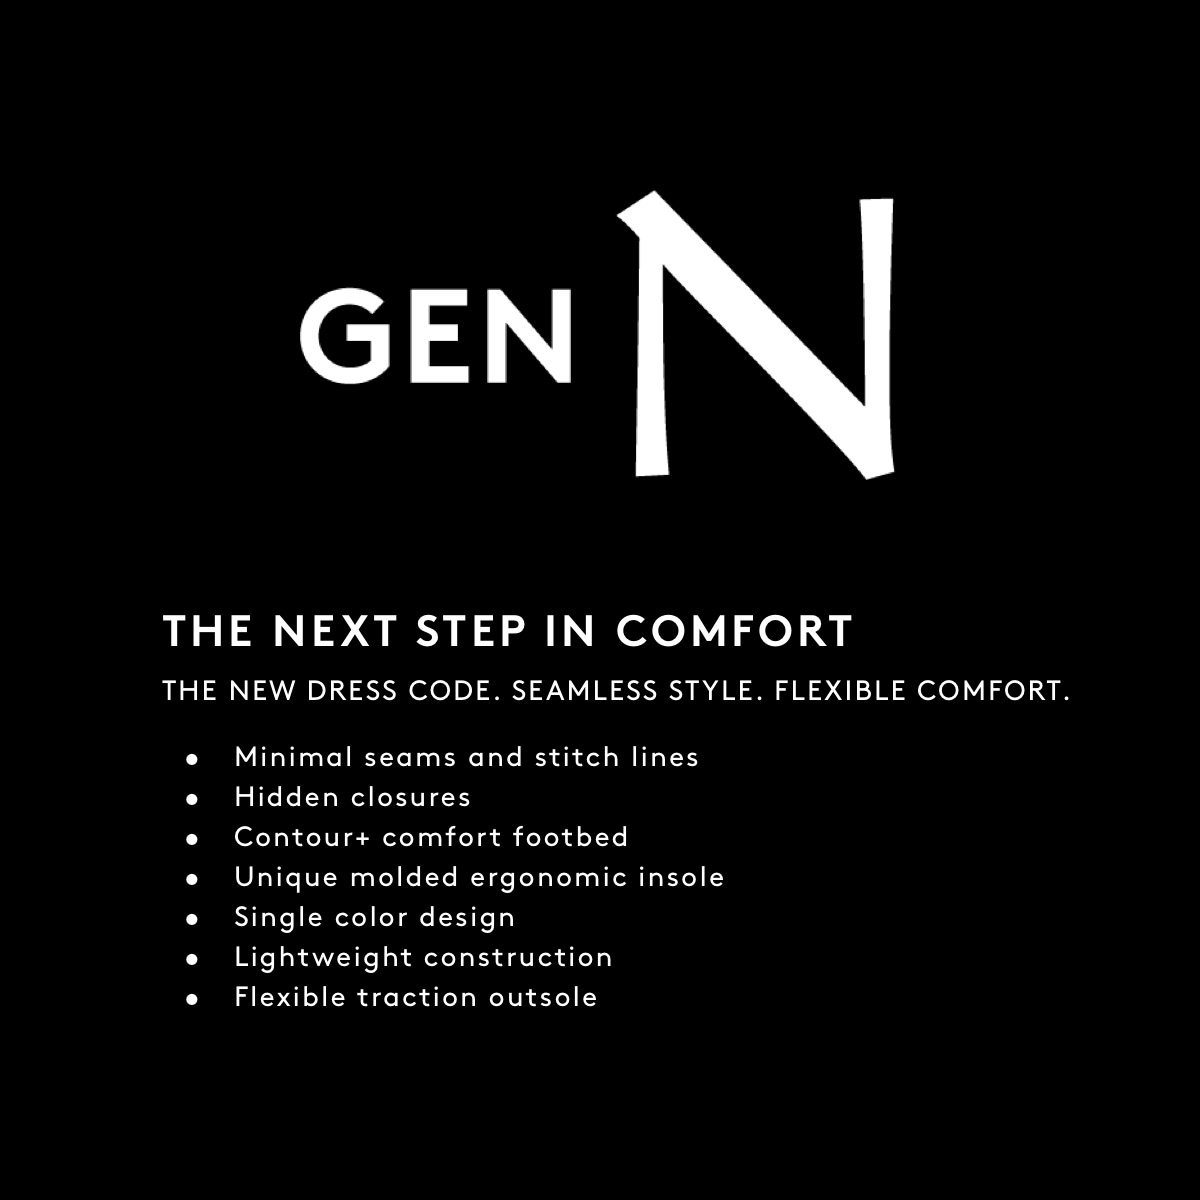 Gen N - The next step in comfort